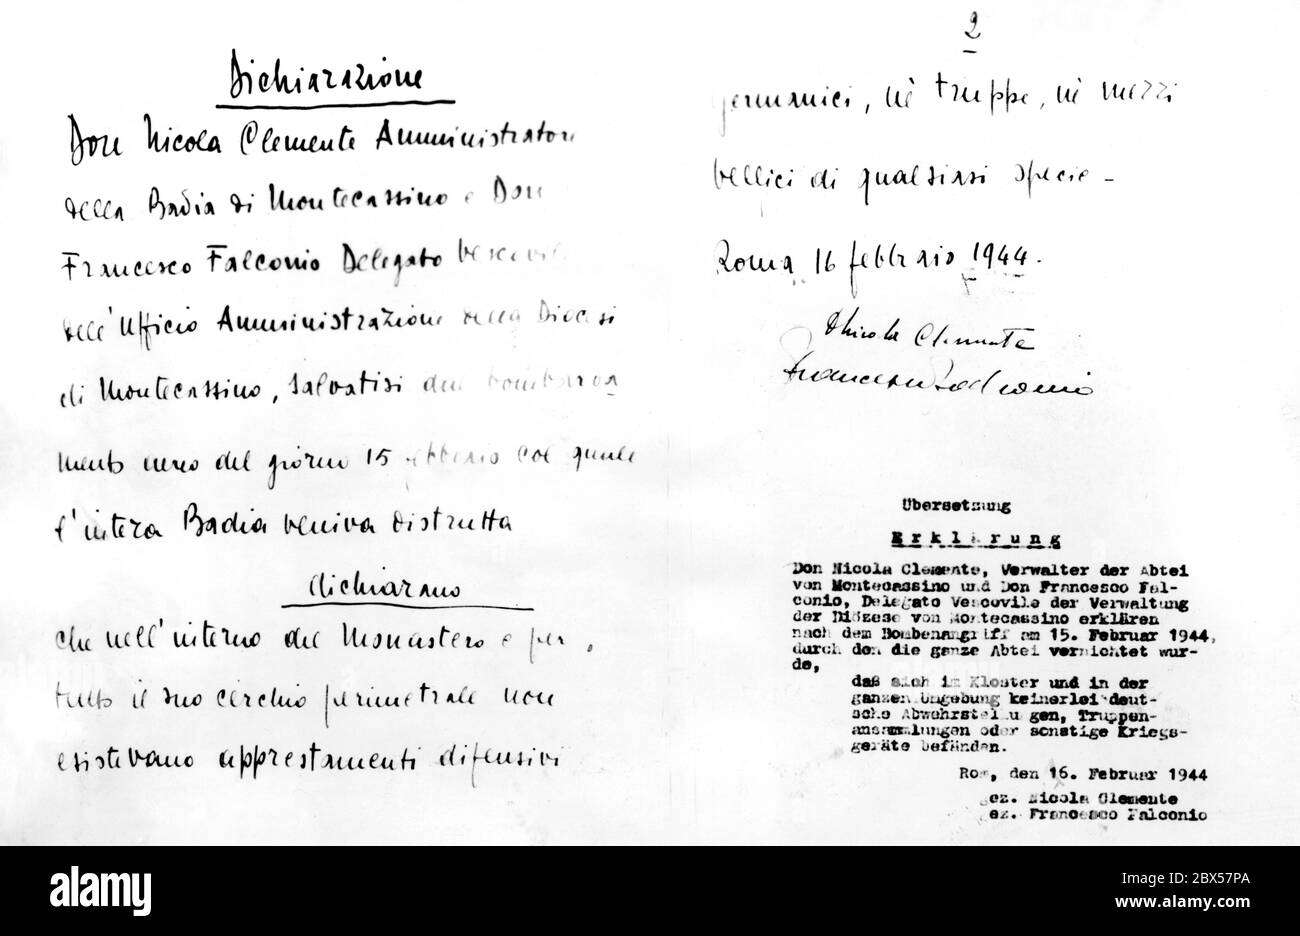 Dichiarazione scritta dei custodi dell'Abbazia di Montecassino, secondo la quale non vi erano truppe tedesche nel monastero all'epoca dell'incursione aerea alleata. Originale italiano con traduzione in tedesco, datato 16 febbraio 1944. Foto Stock